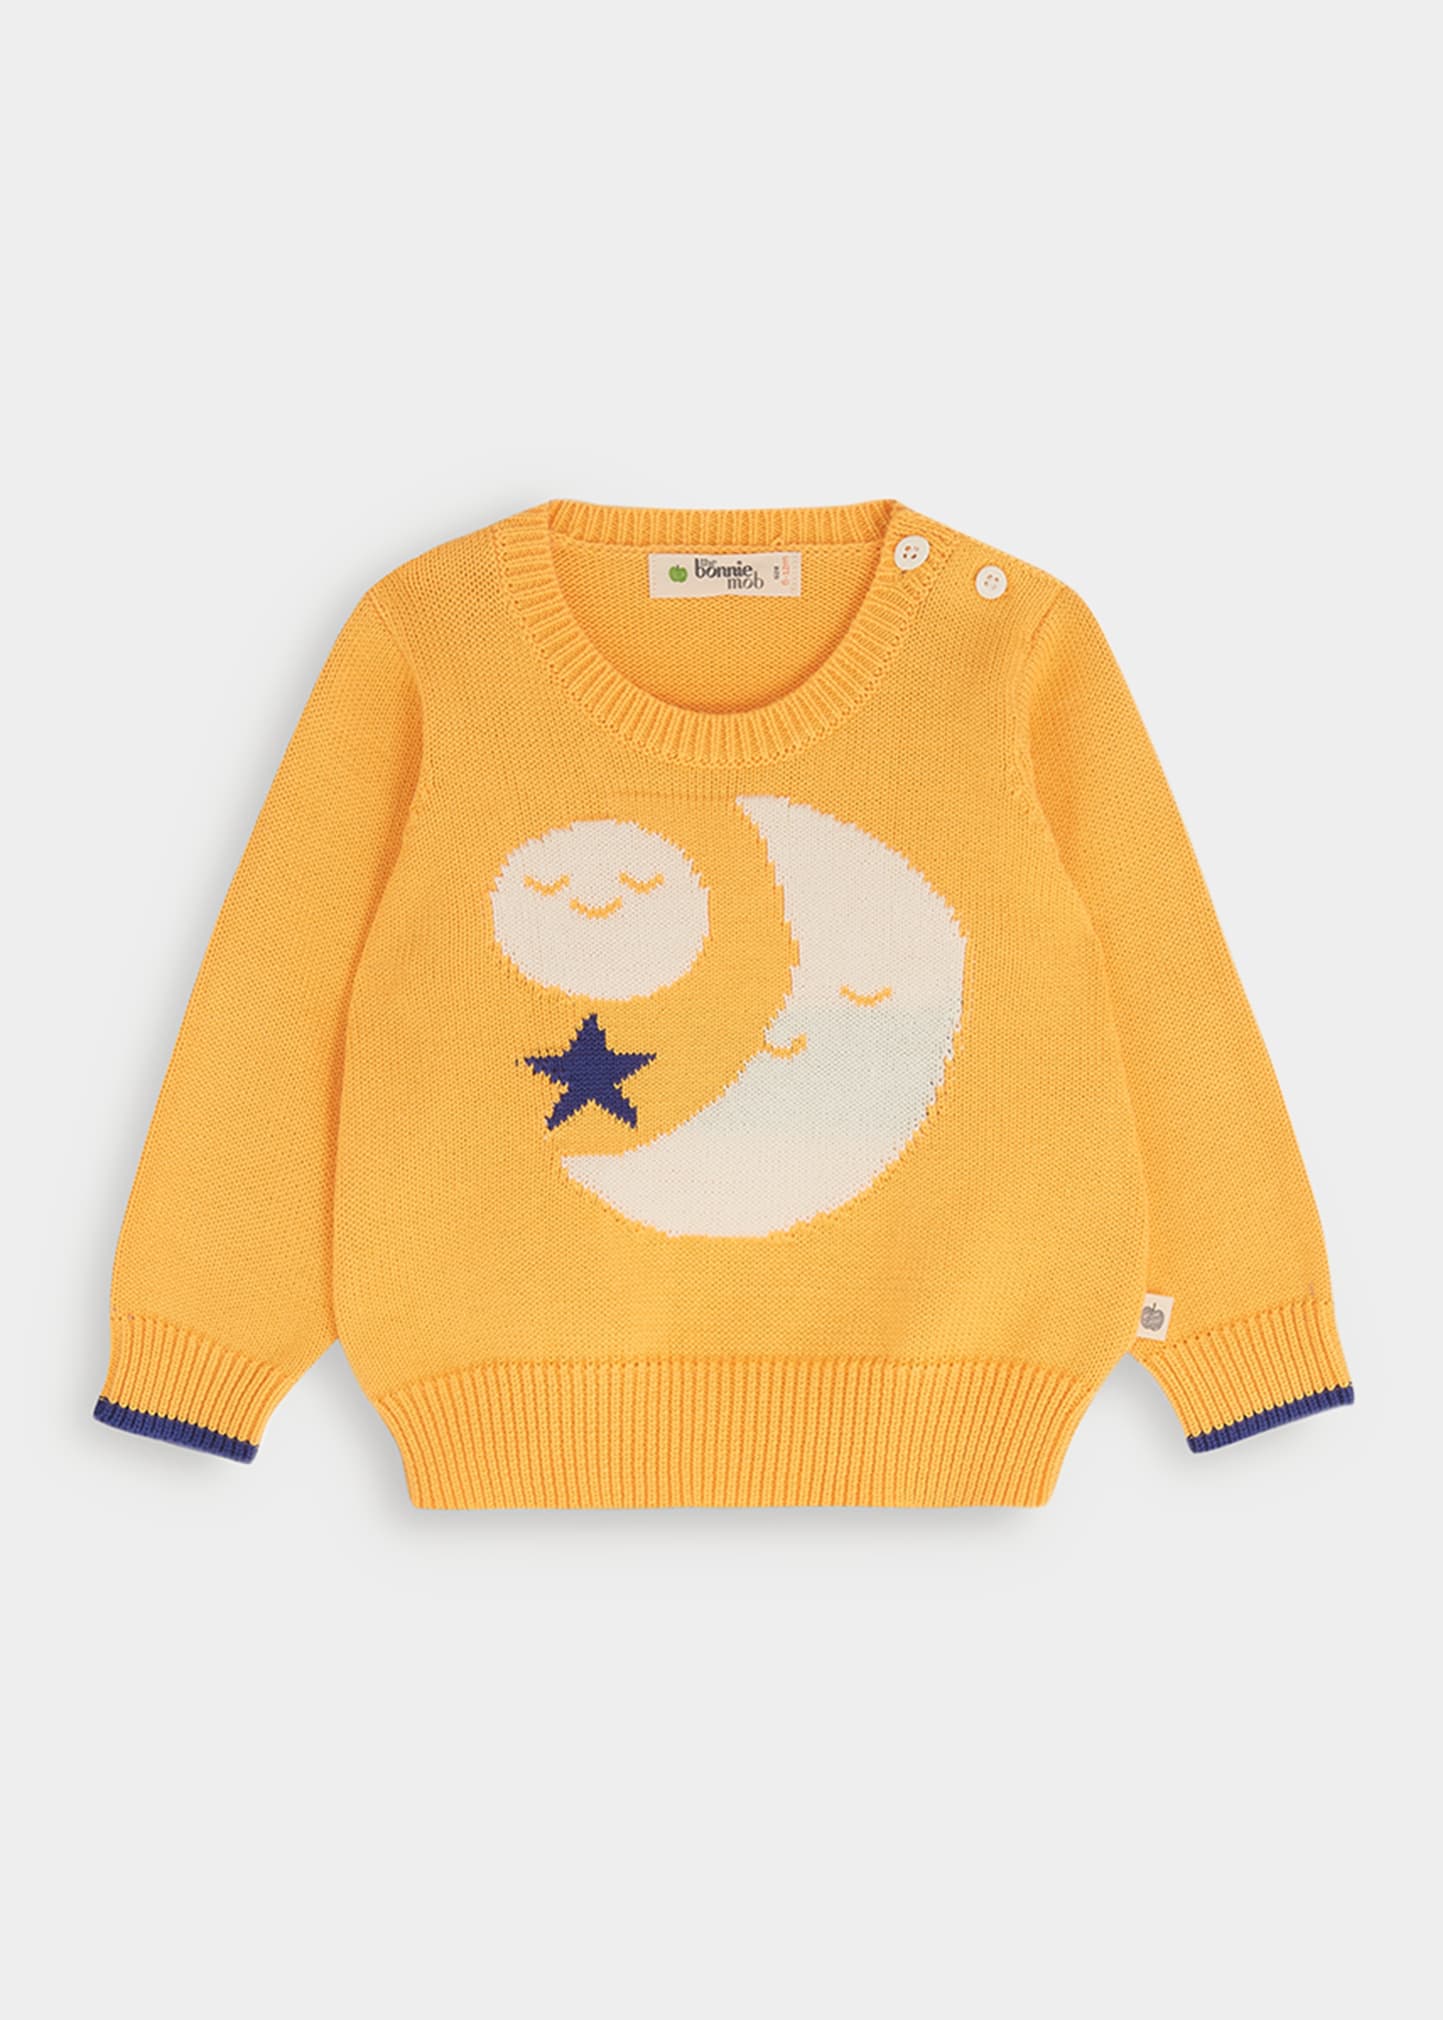 bonniemob Girl's Moon Knit Sweater, Size Newborn-24M